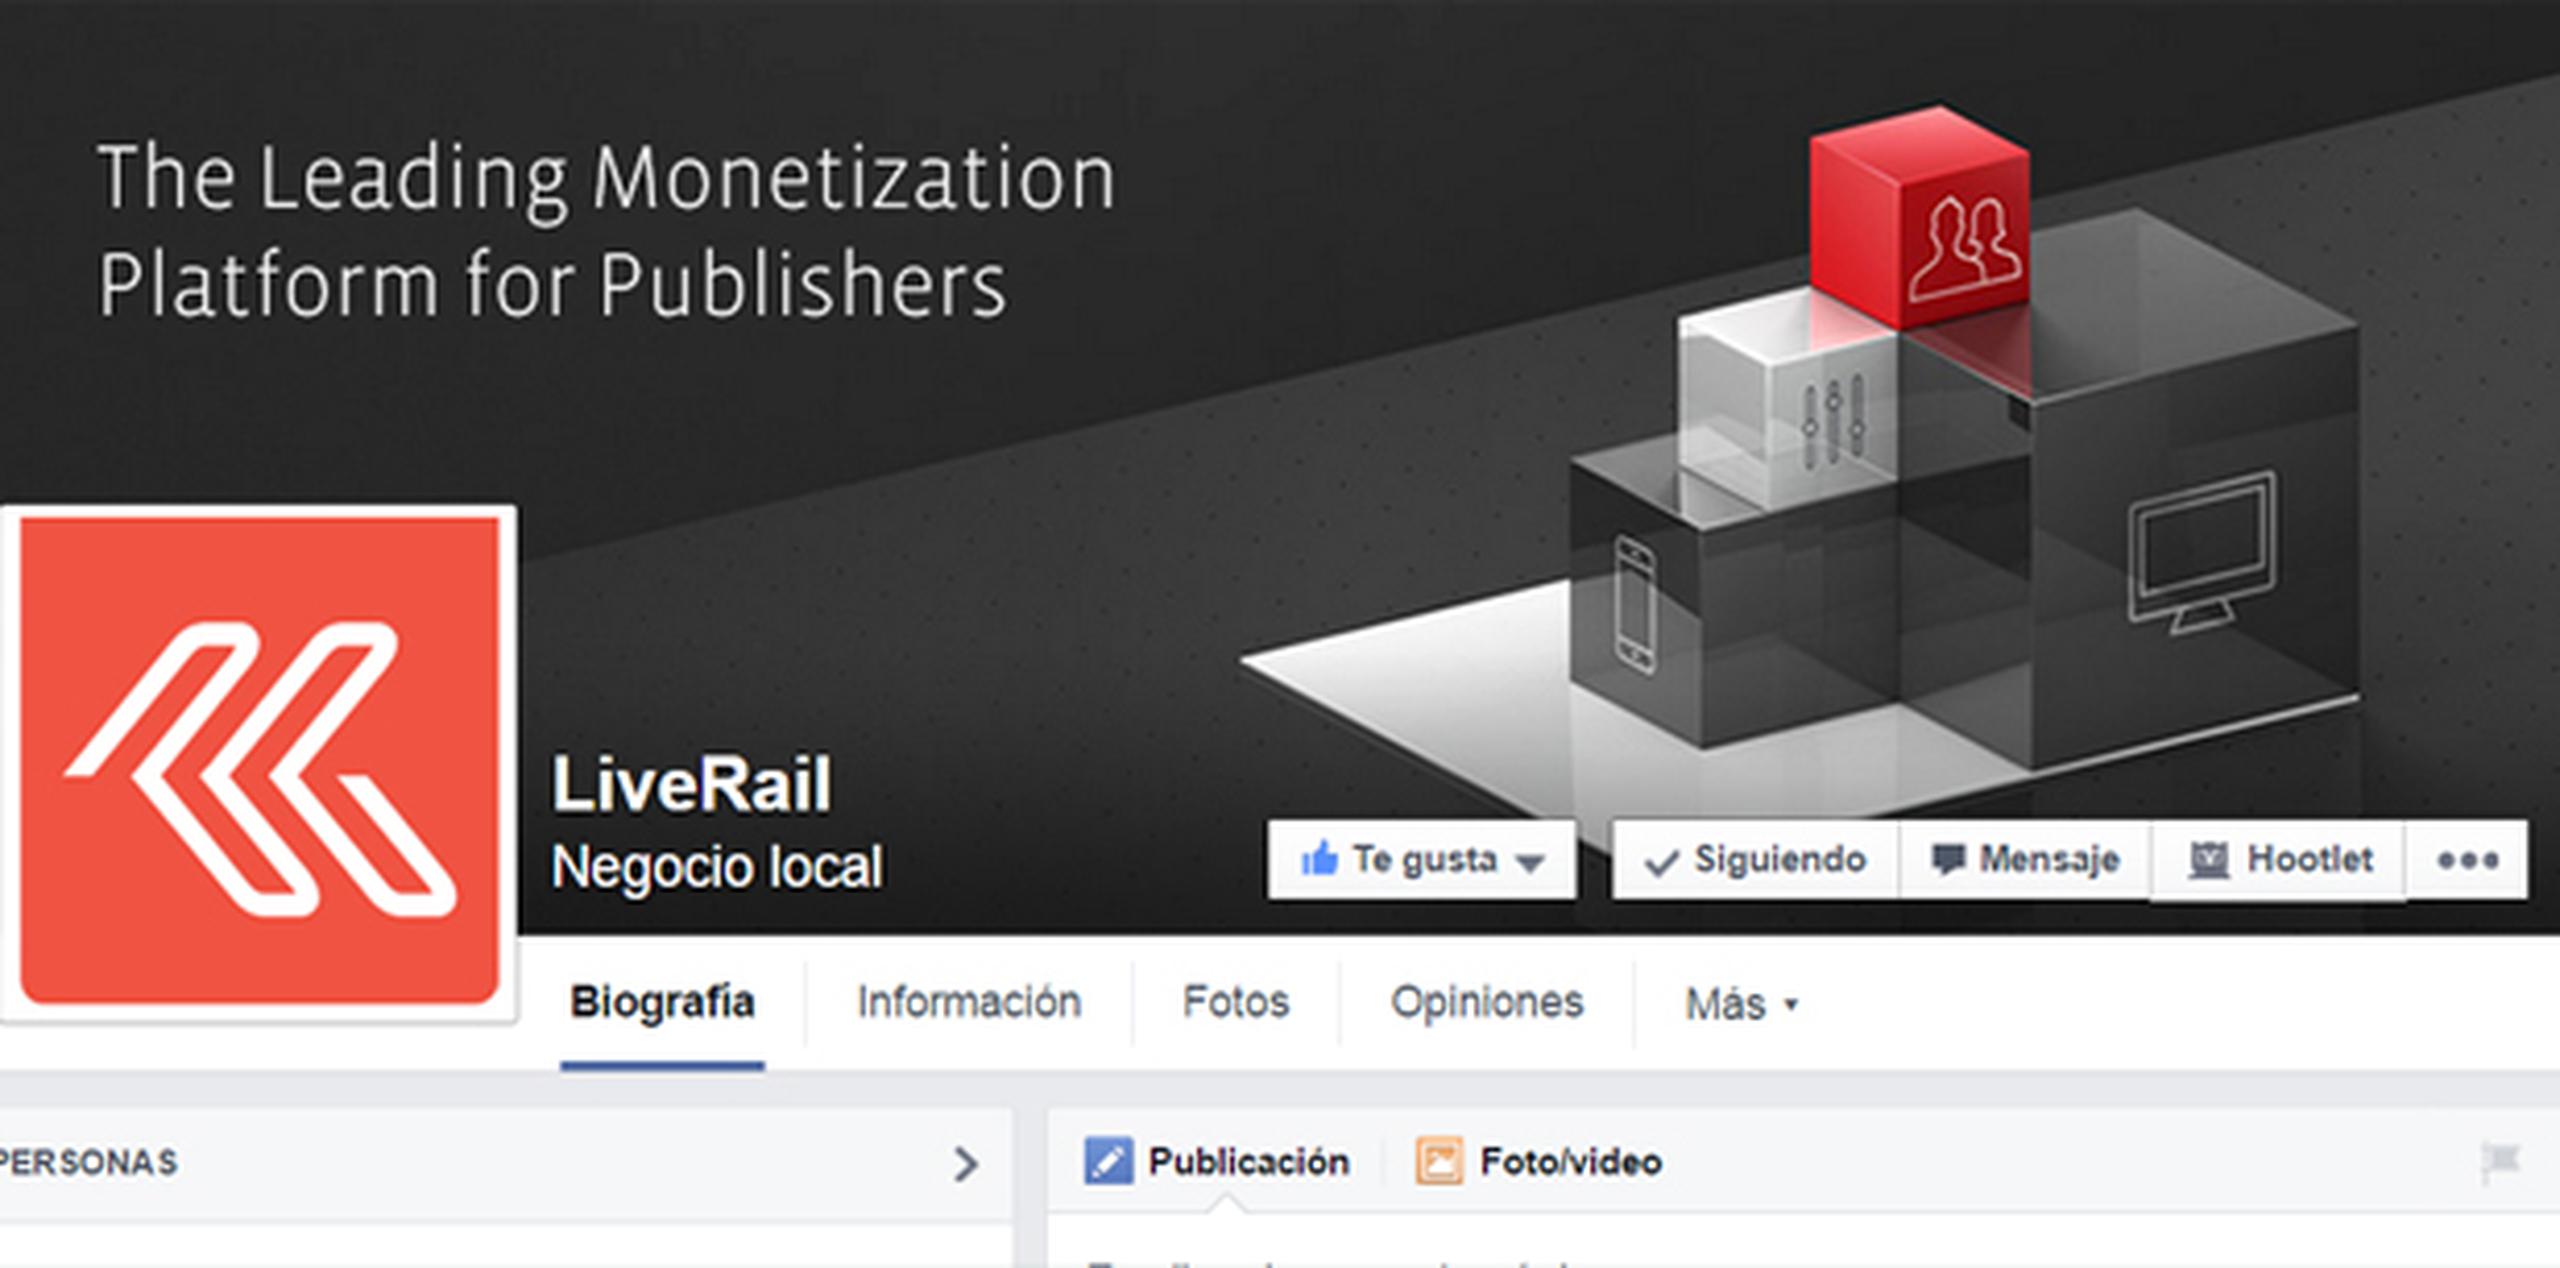 LiveRail tendrá acceso a información demográfica -anónima- de la red social para que la segmentación de anuncios sea más precisa. (Facebook)